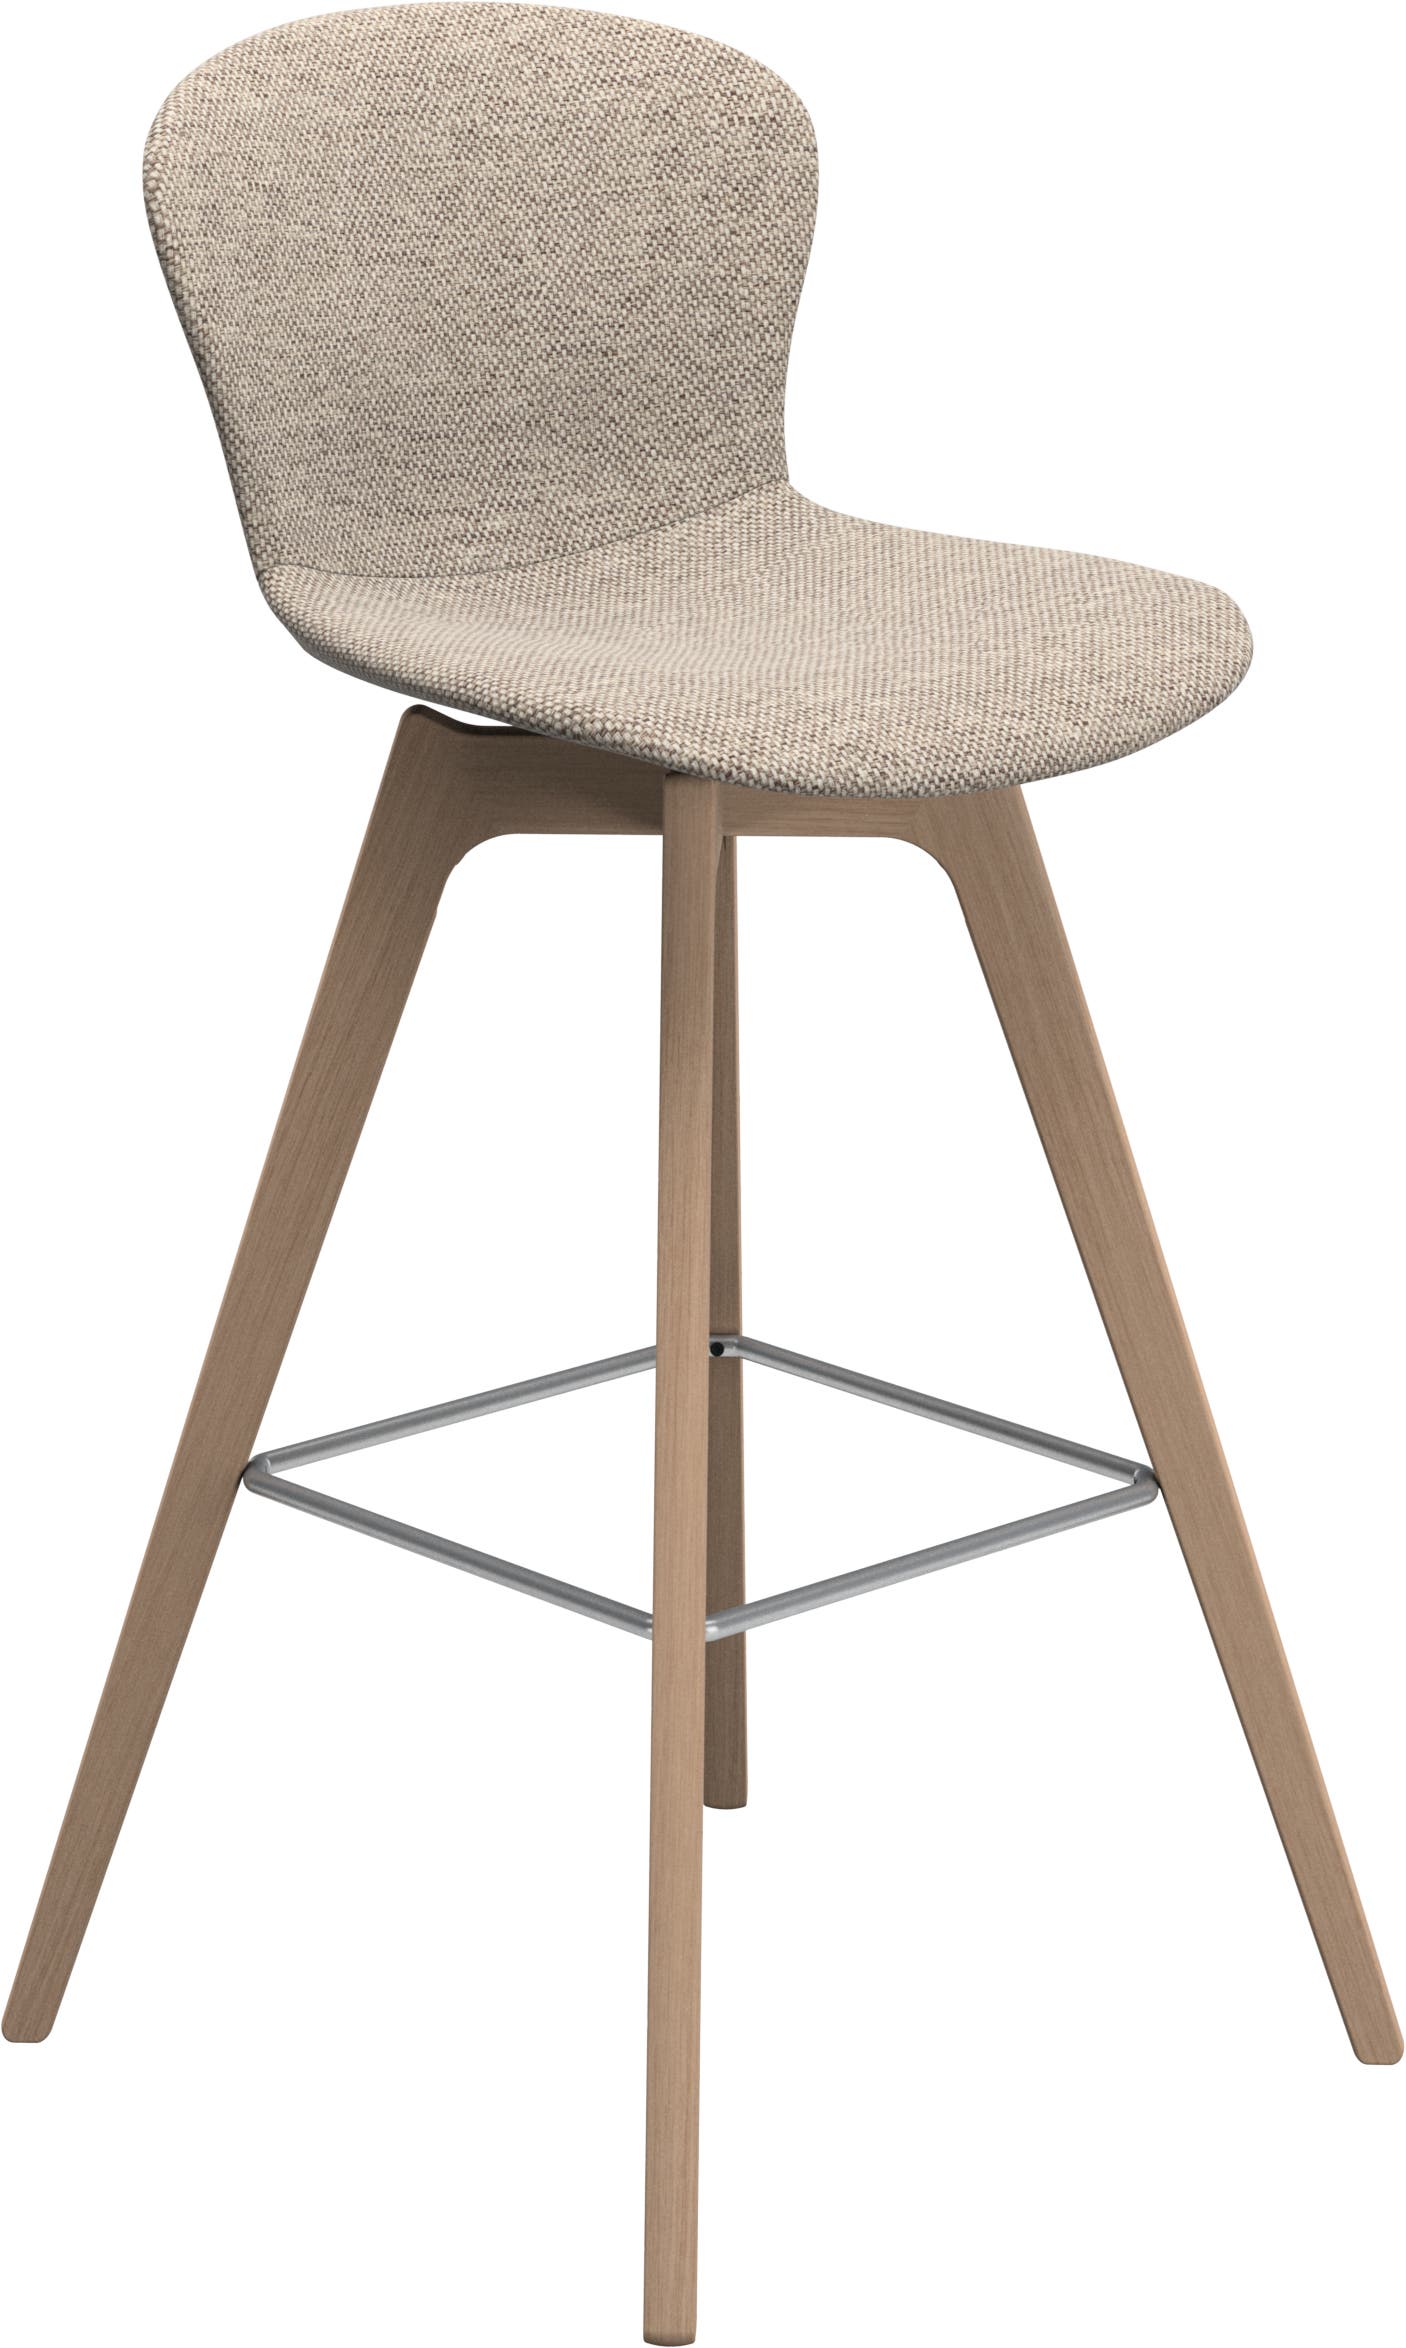 デザイナーバースツール | デンマークデザインの家具 | ボーコンセプト